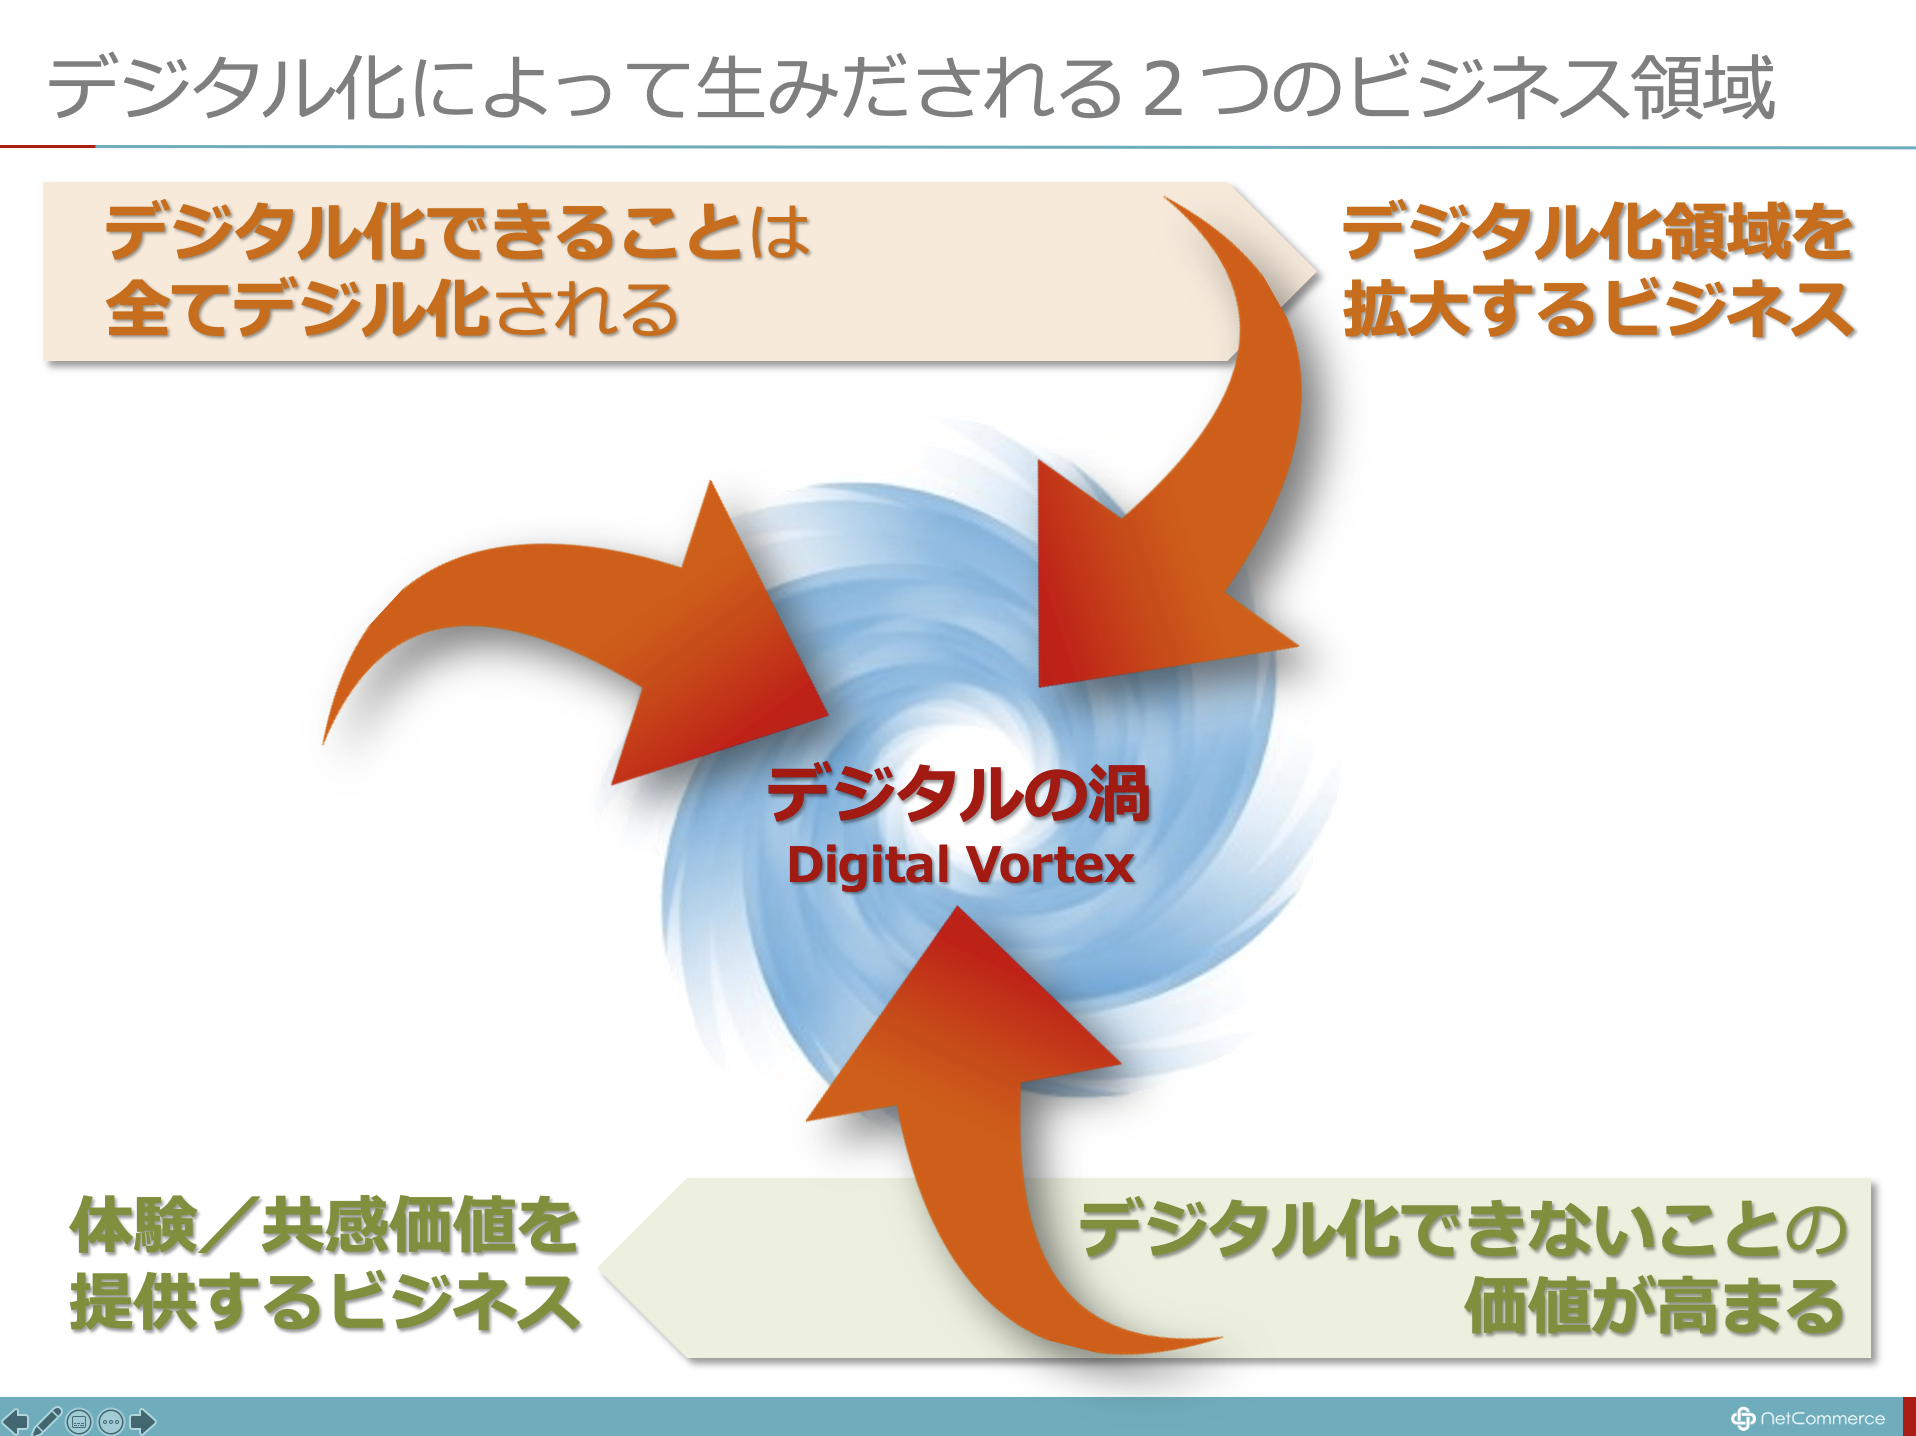 デジタル化できるものはすべてデジタル化される 時代に求められる２つのビジネス ネットコマース株式会社